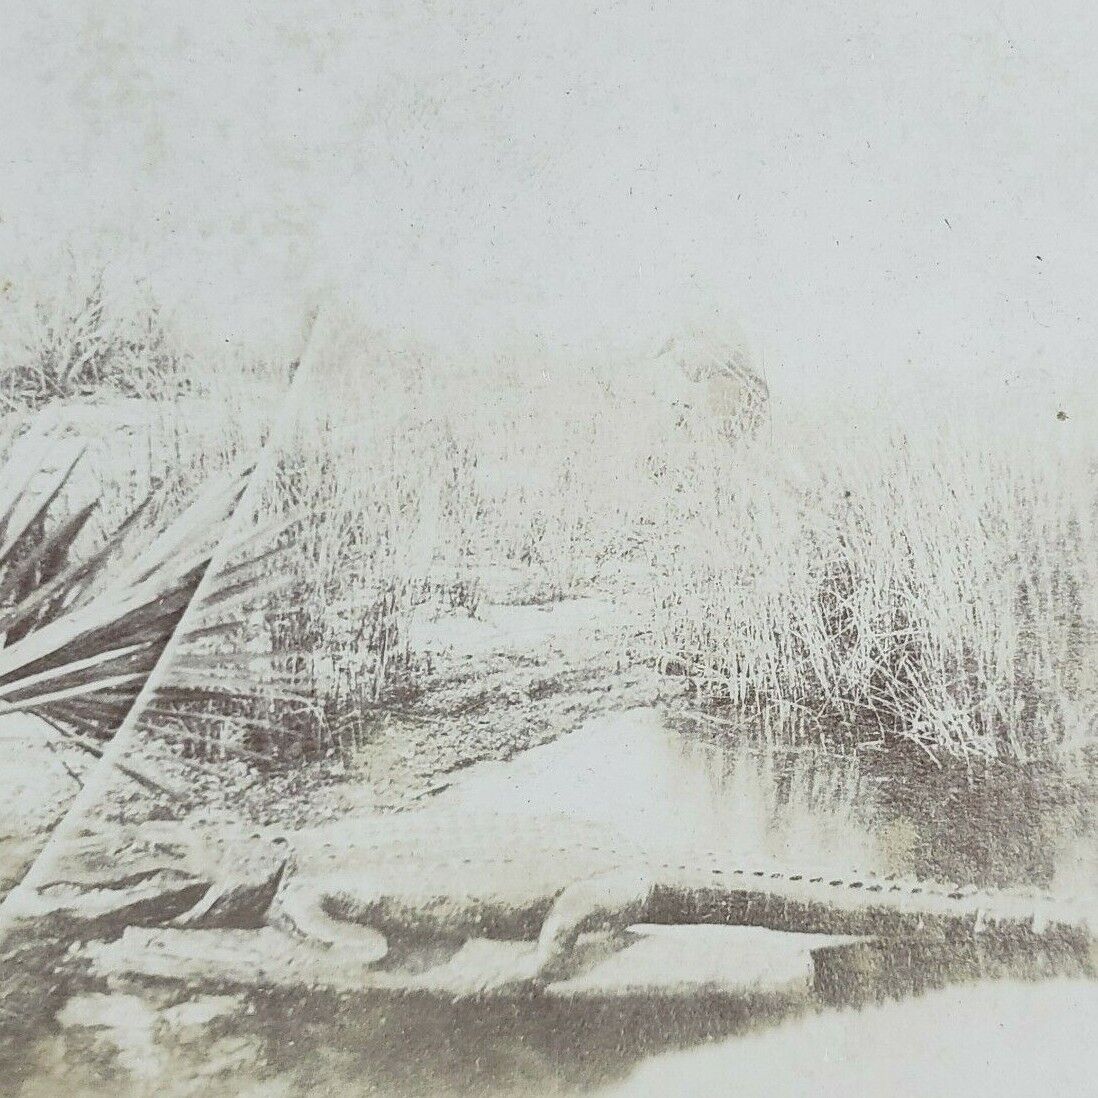 South Florida Alligator Swamp Everglades Wetland Antique Photo Stereoview I203